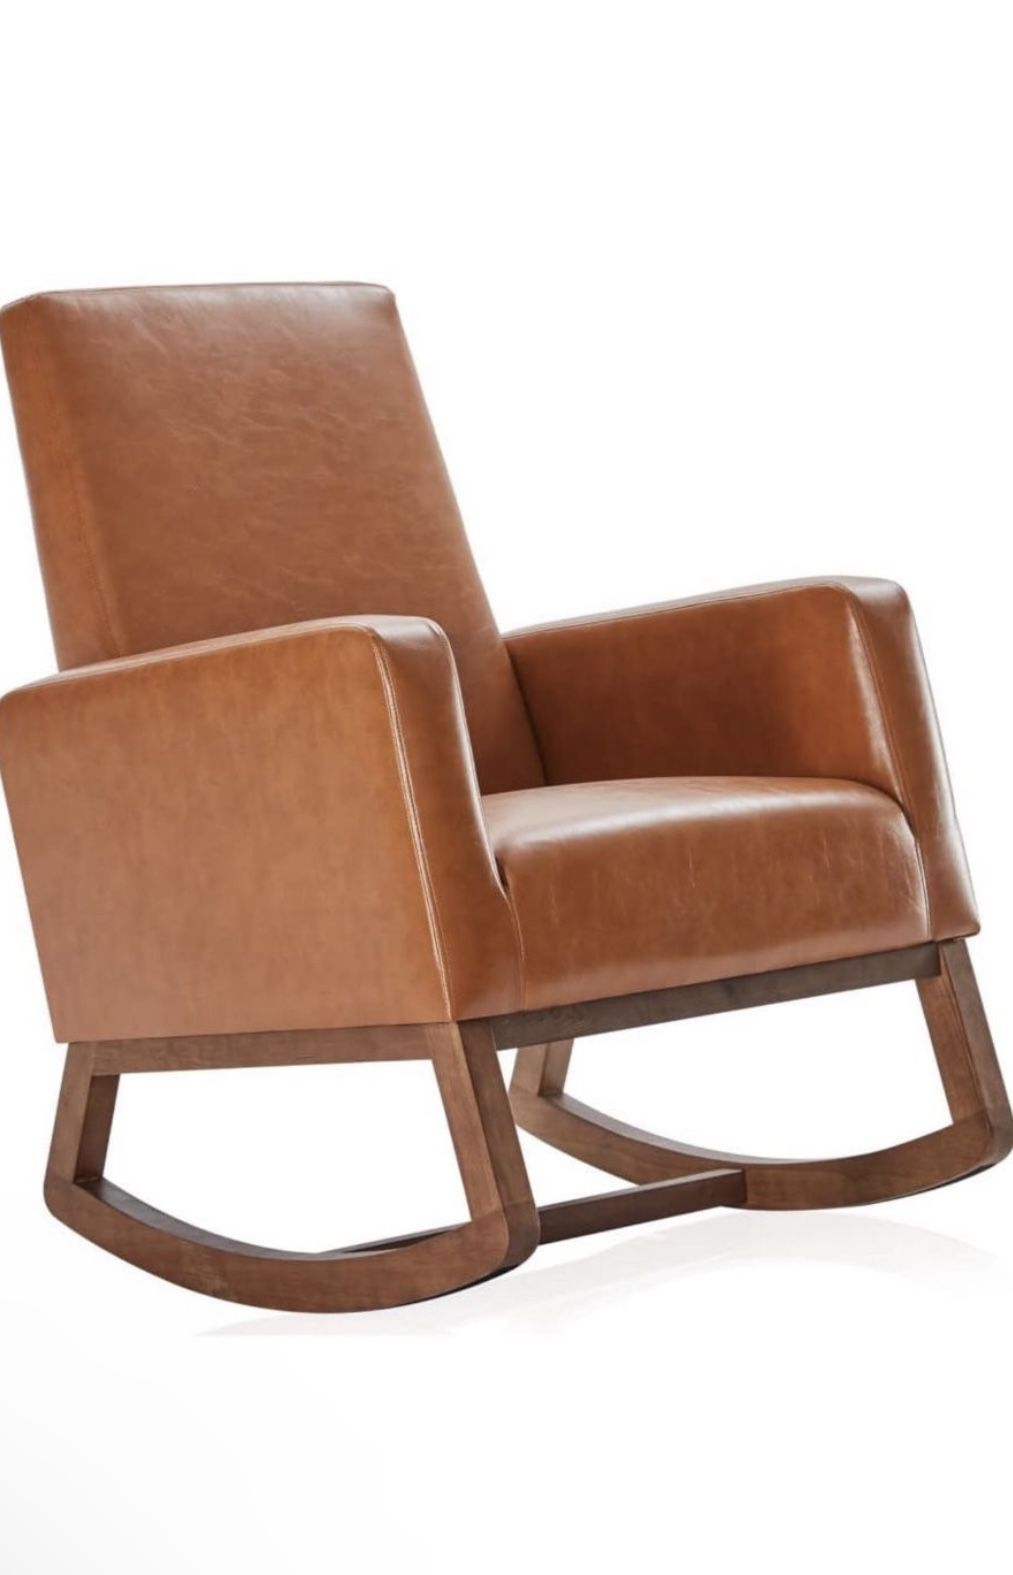 Faux Leather Rocking Chair - Cognac Color